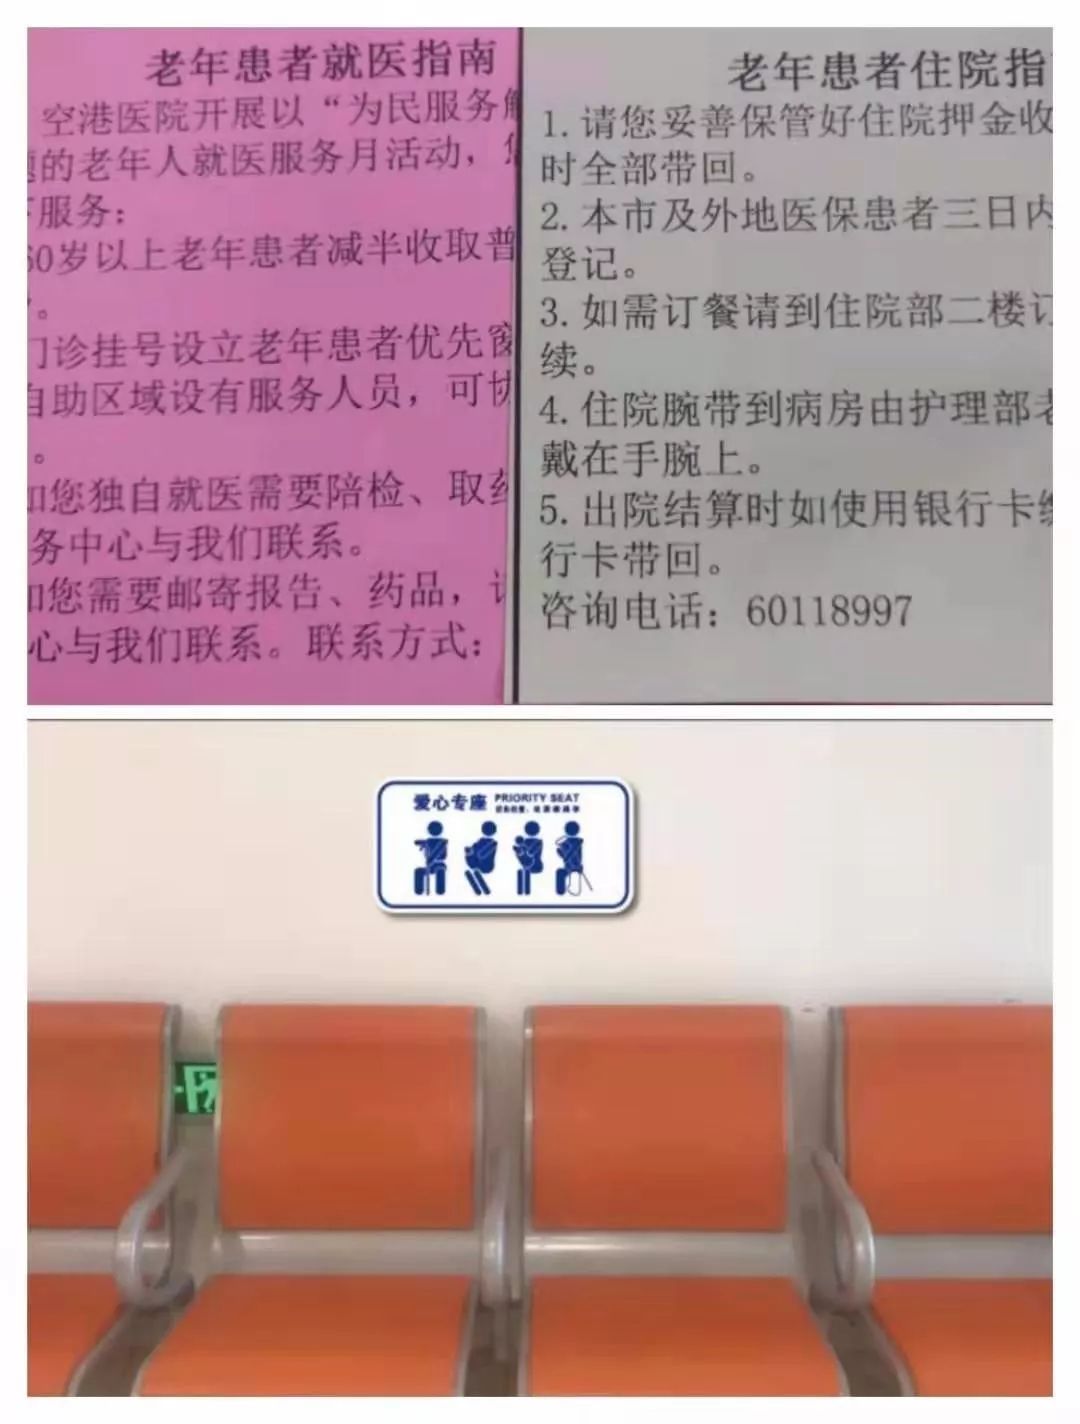 关于天津市天津医院医院跑腿陪诊挂号，随诊顾问帮您解忧的信息